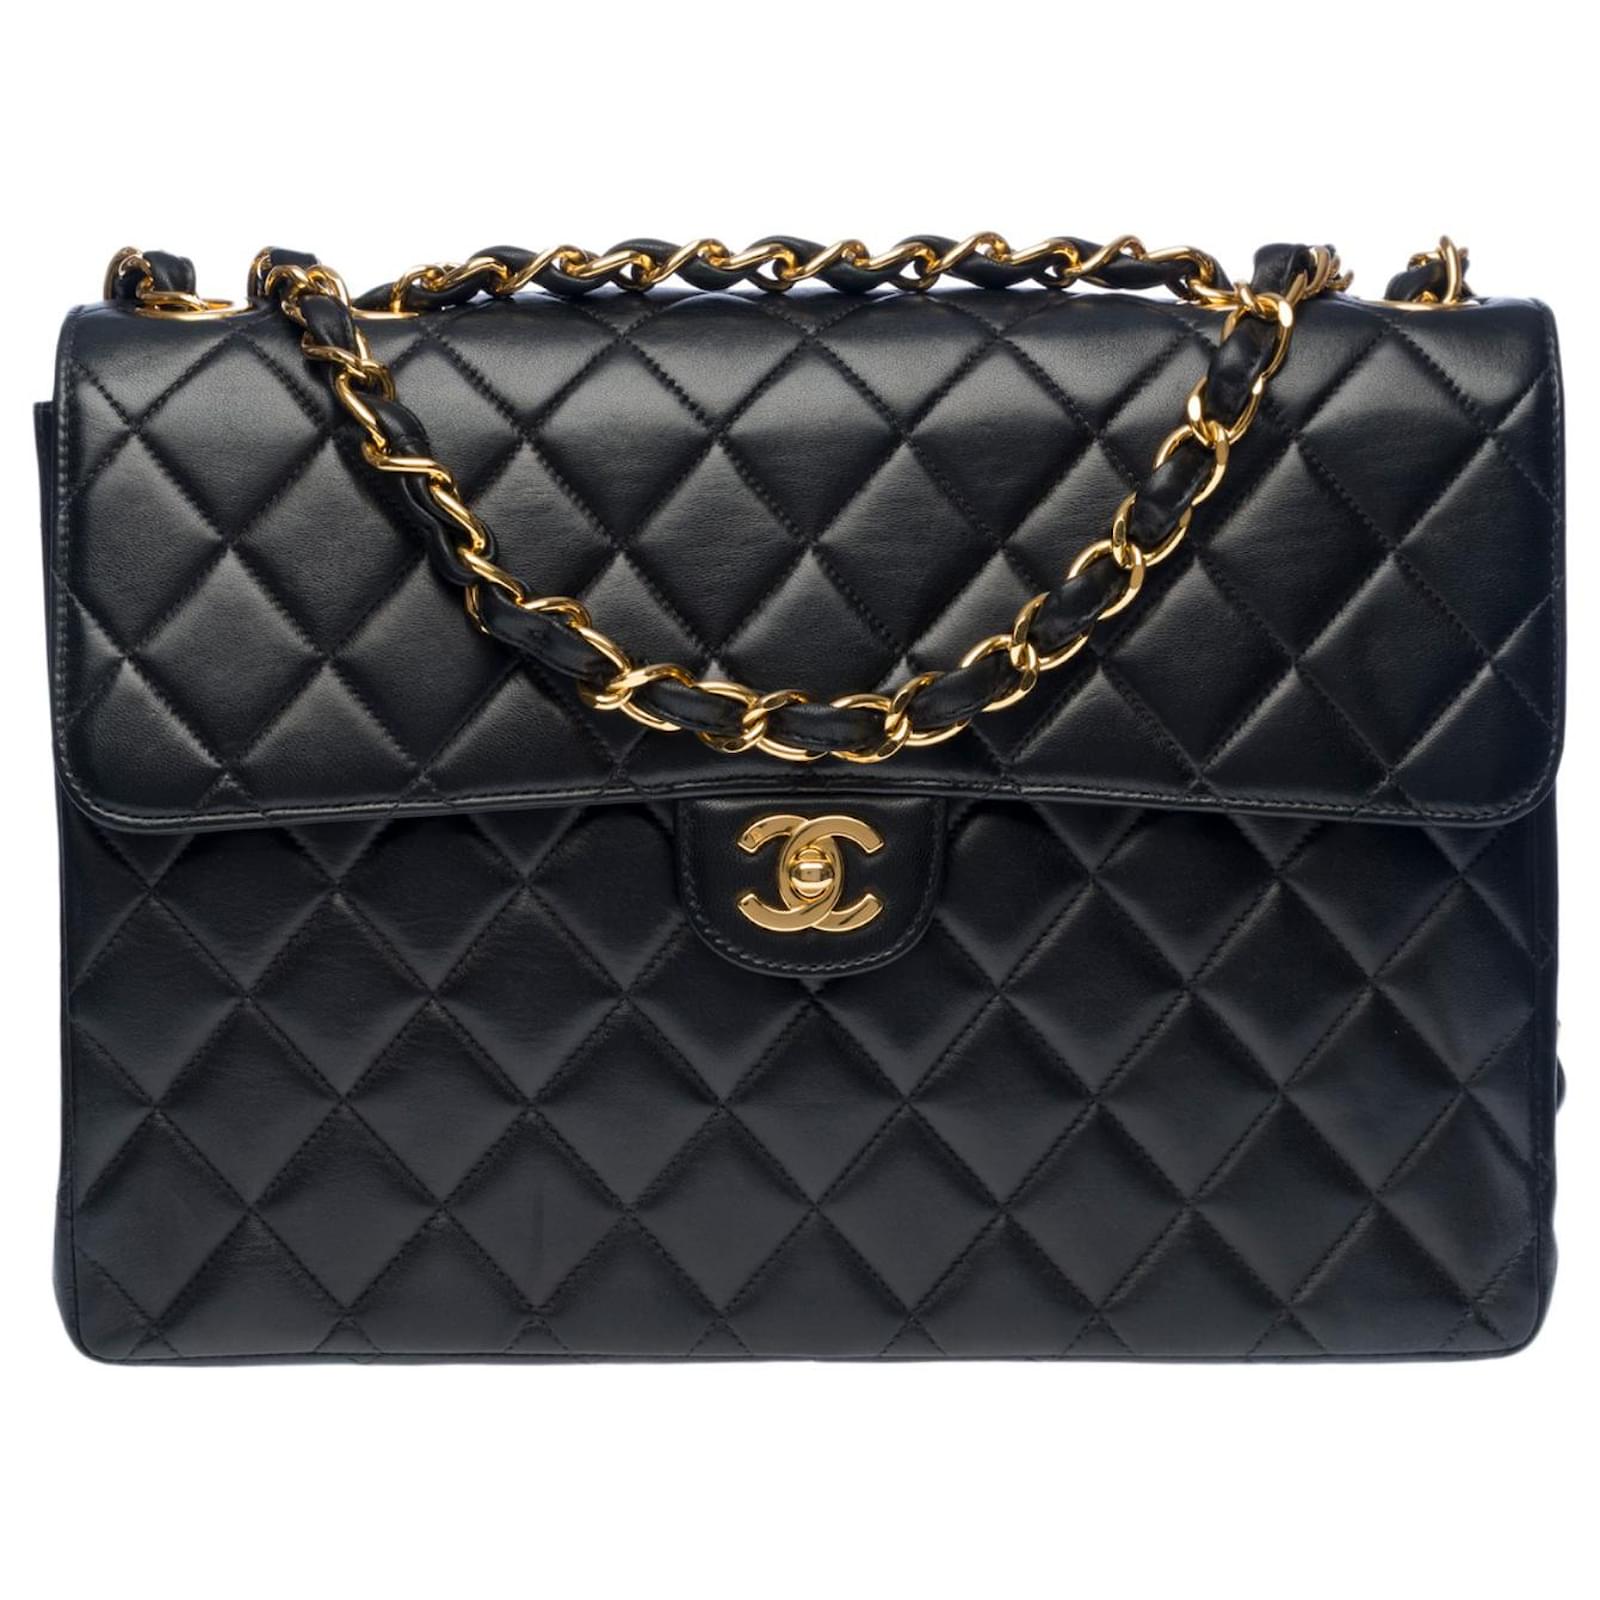 Exceptional vintage Chanel Timeless Jumbo single Flap bag handbag